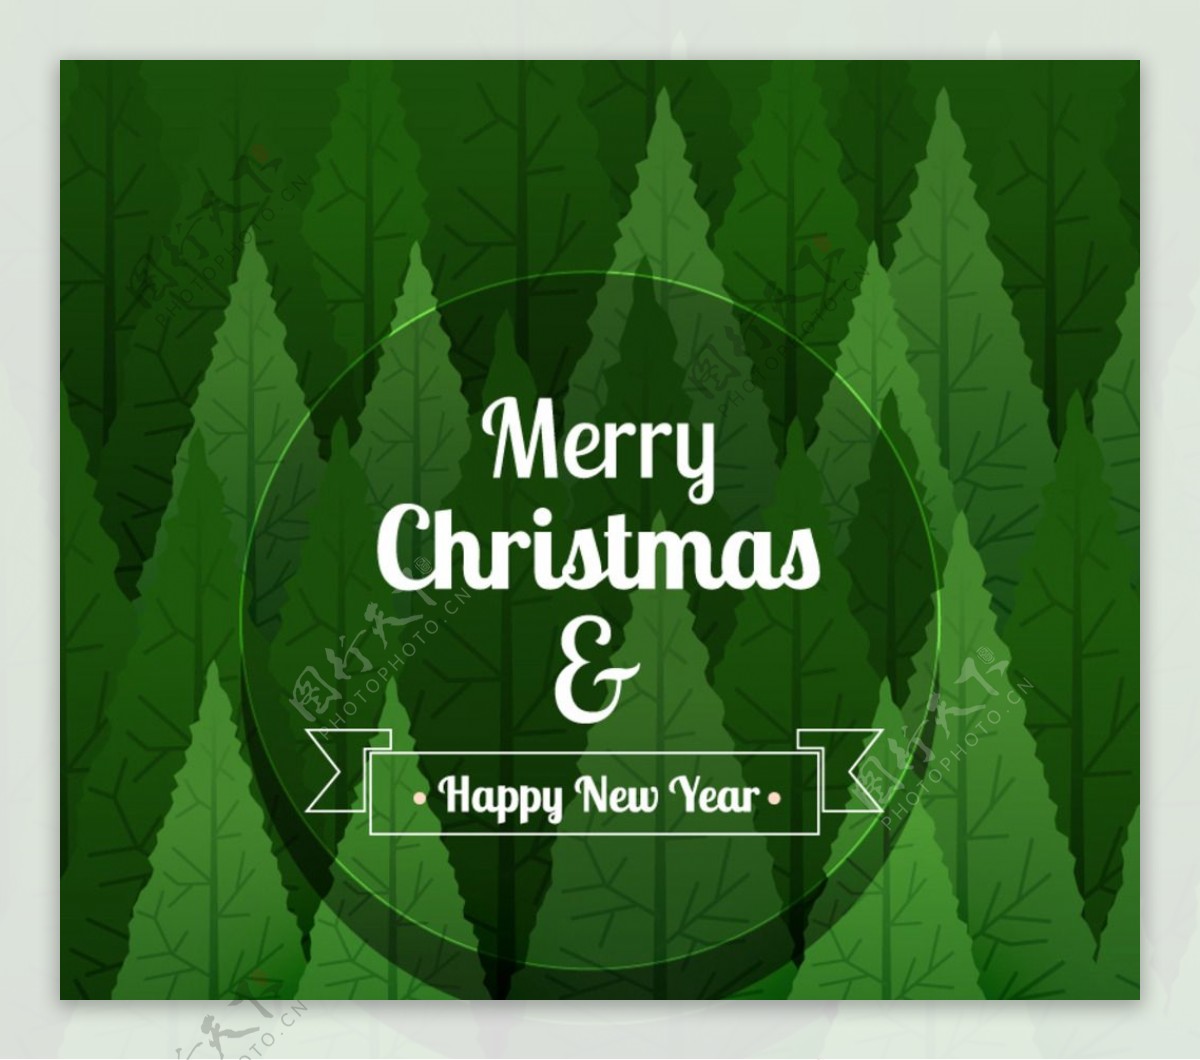 卡通绿色树林圣诞贺卡矢量素材